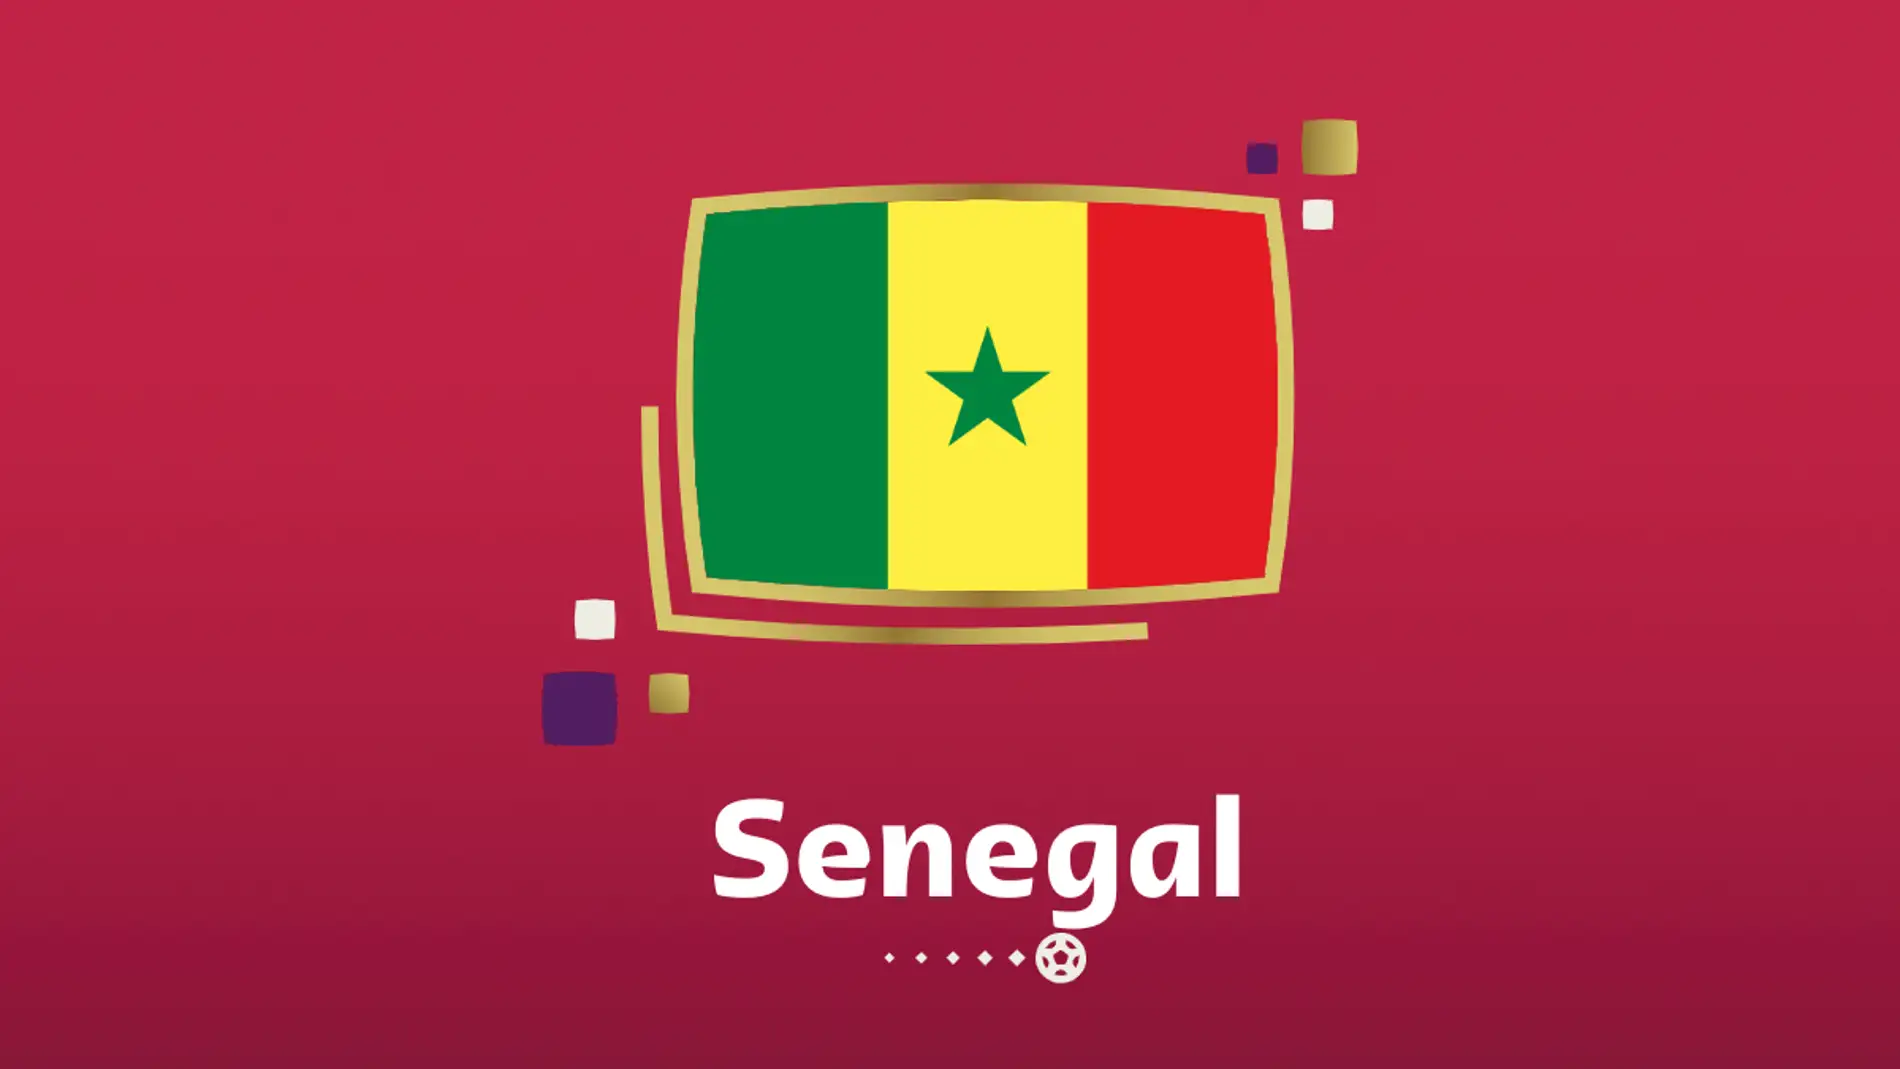 es suficiente varonil cansada Así es la selección de Senegal de Sadio Mané para el Mundial de fútbol 2022  | Onda Cero Radio